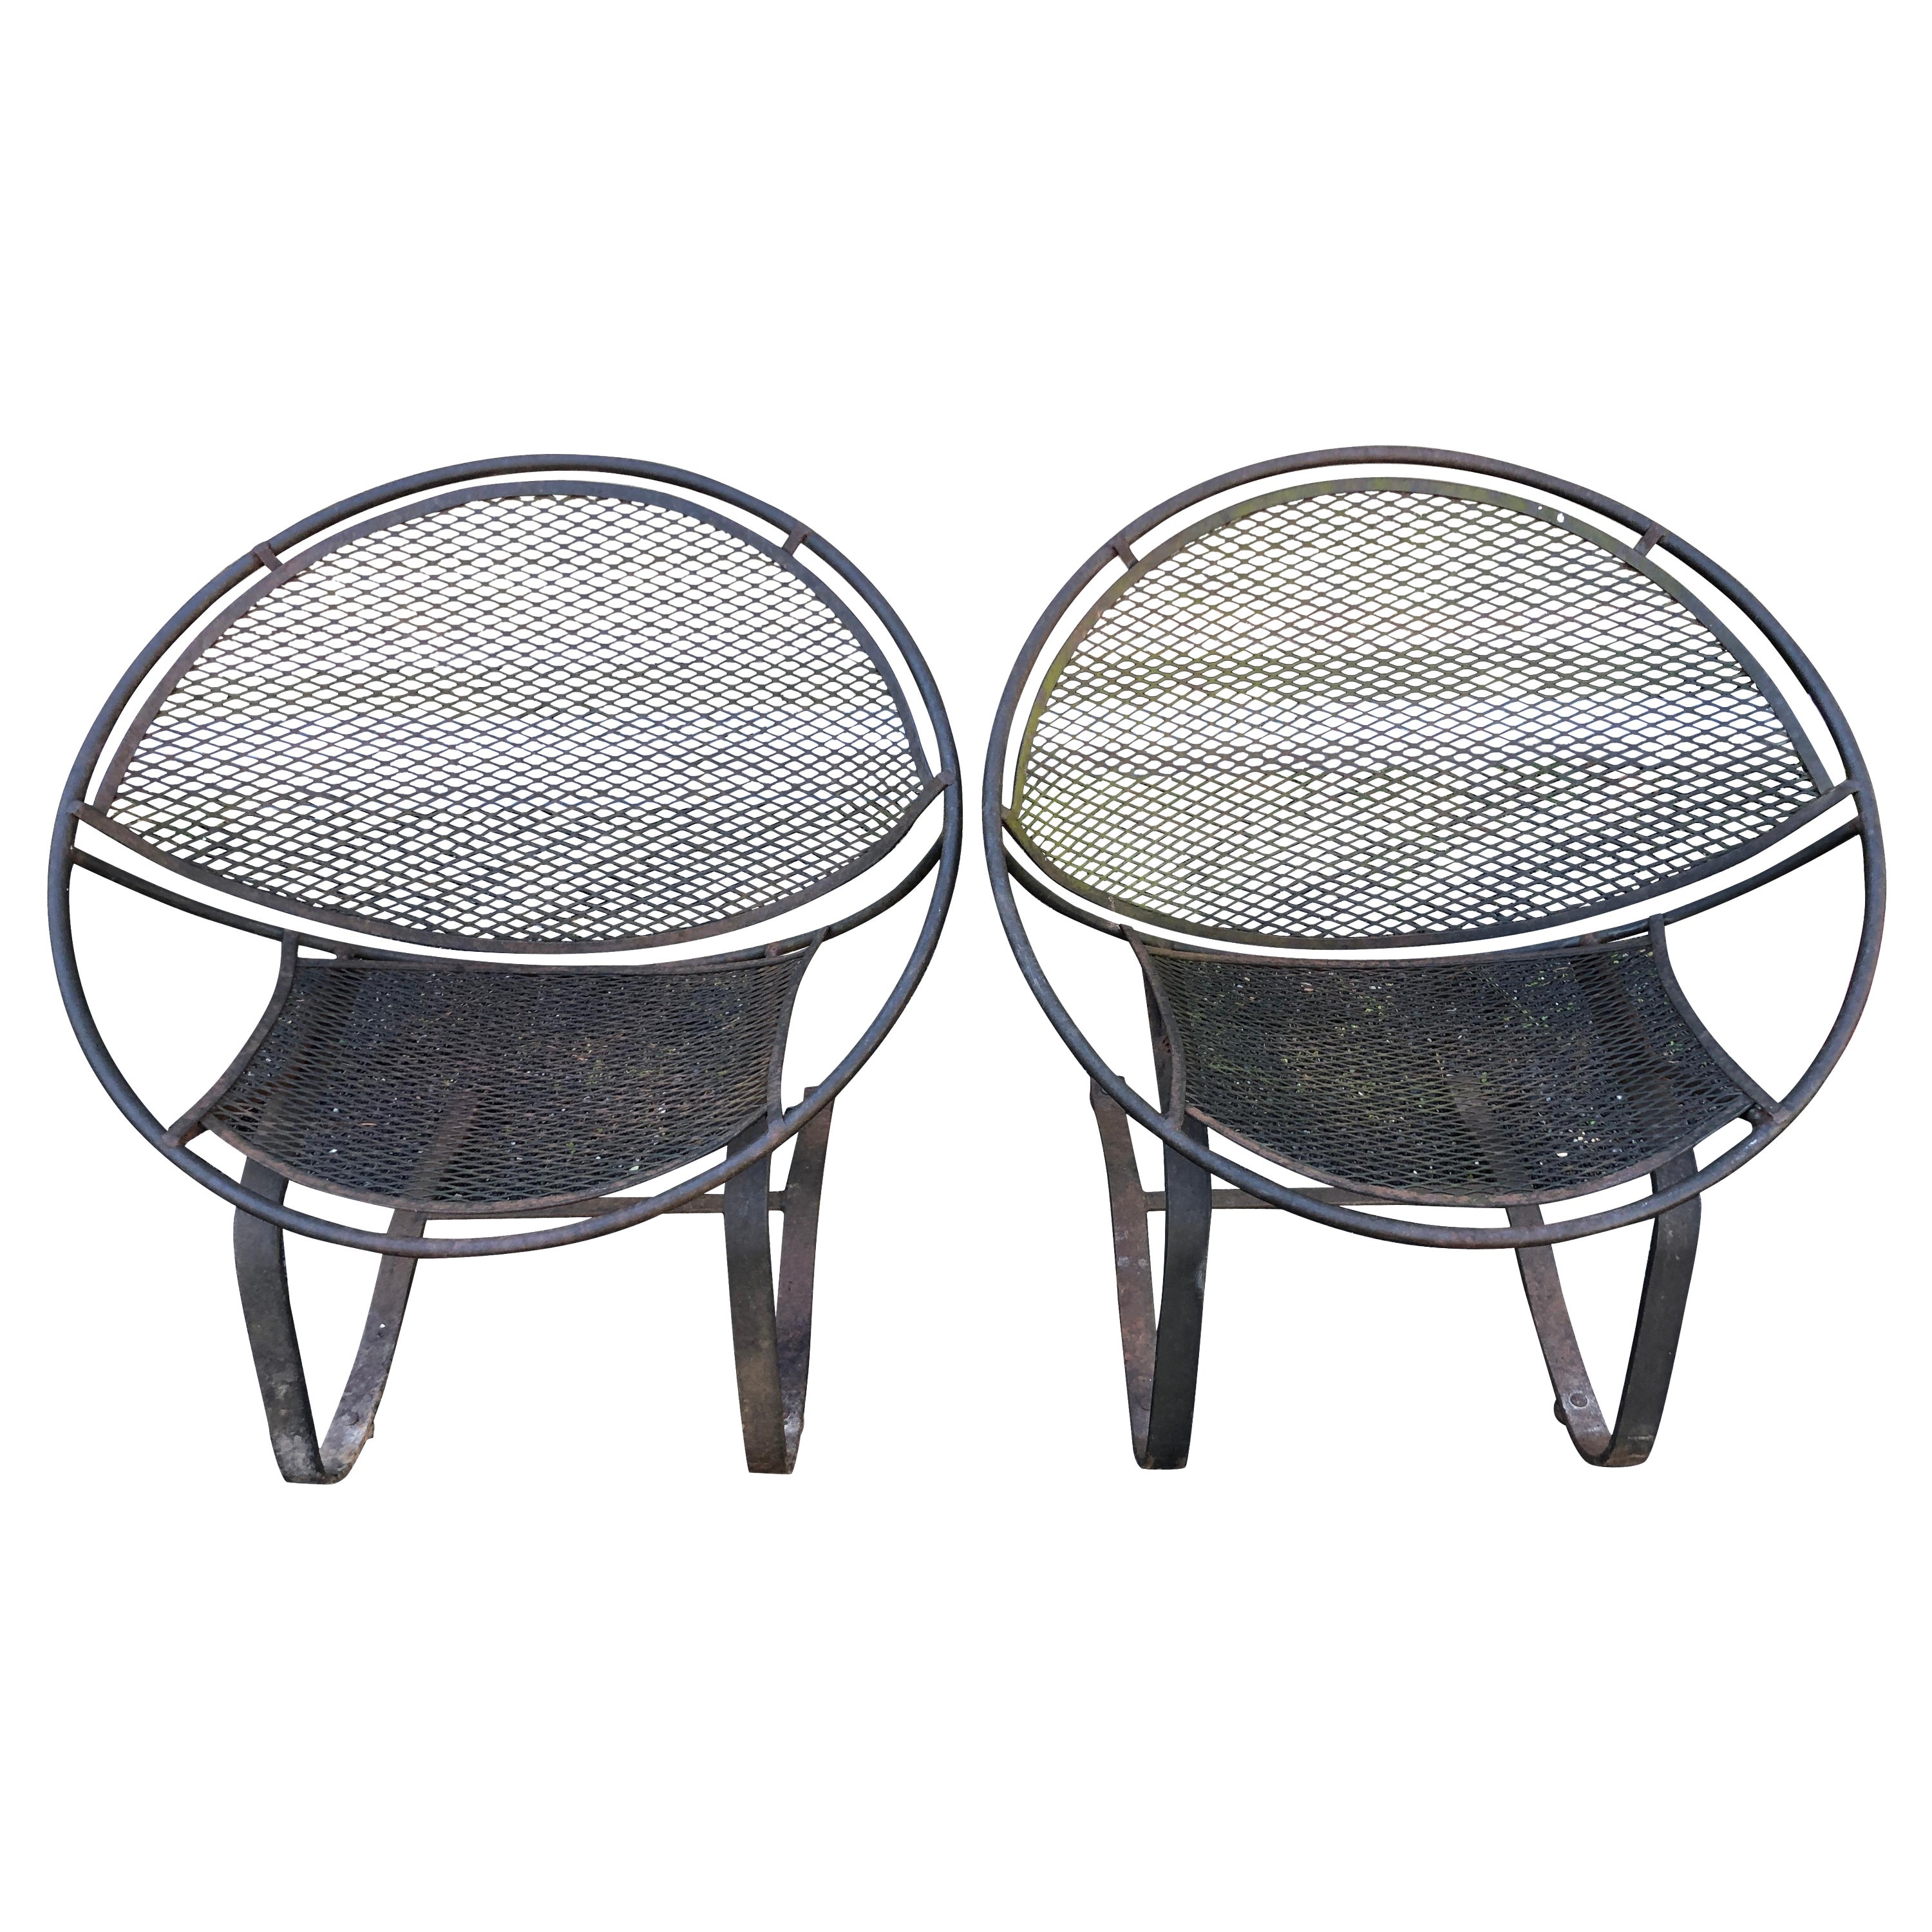 Fabuleuse paire de chaises longues Tempestini Salterini Cantilever Patio Radar des années 50